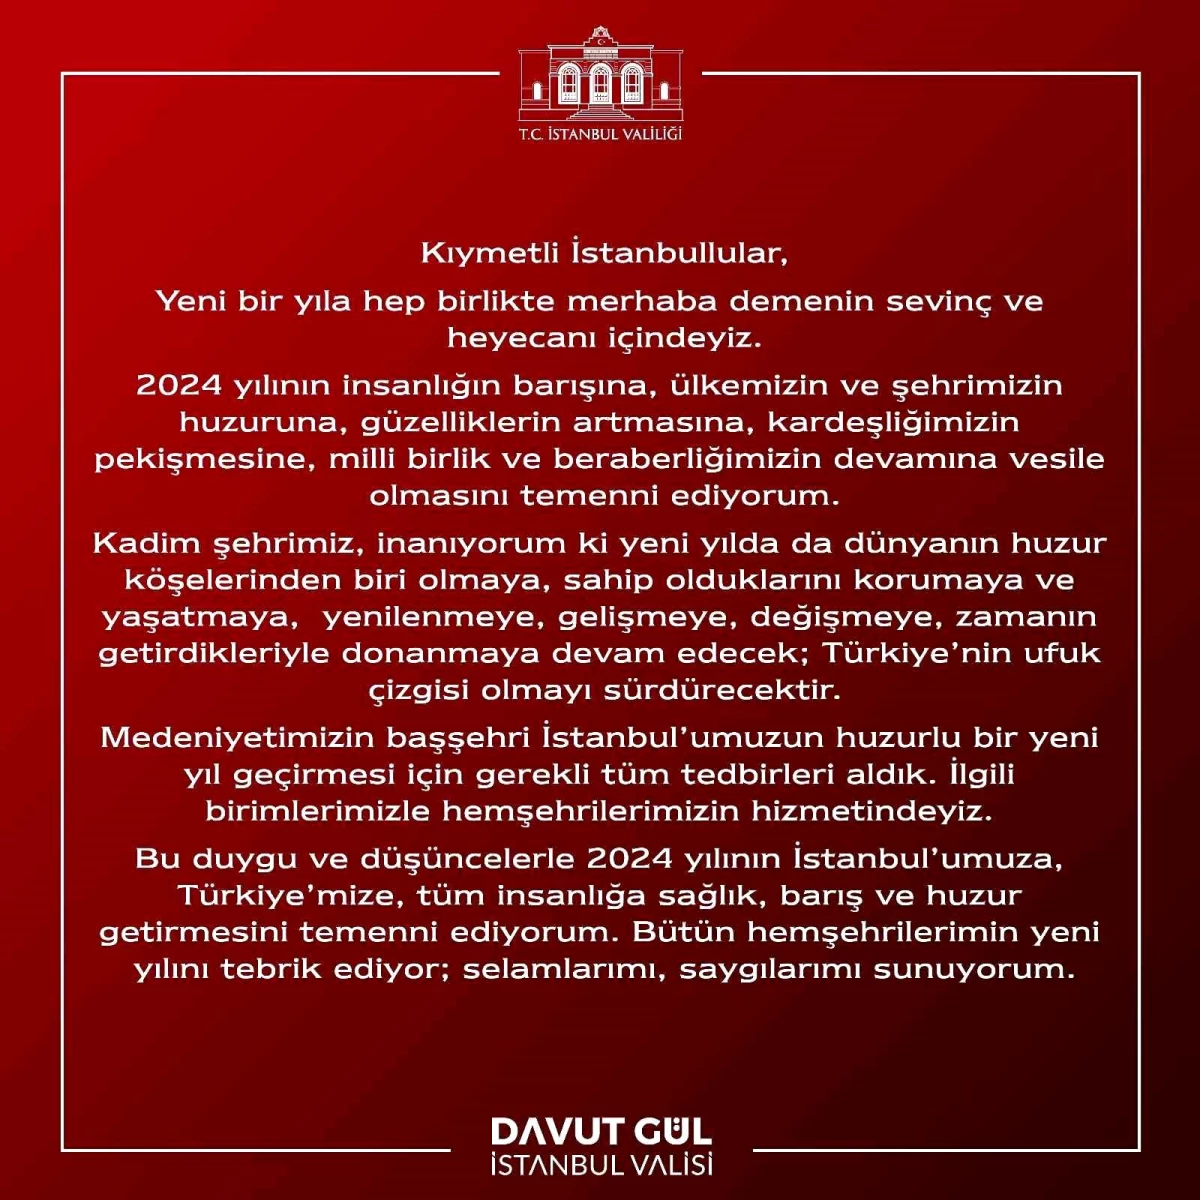 İstanbul Valisi: İstanbul\'un huzurlu bir yeni yıl geçirmesi için tedbirler alındı